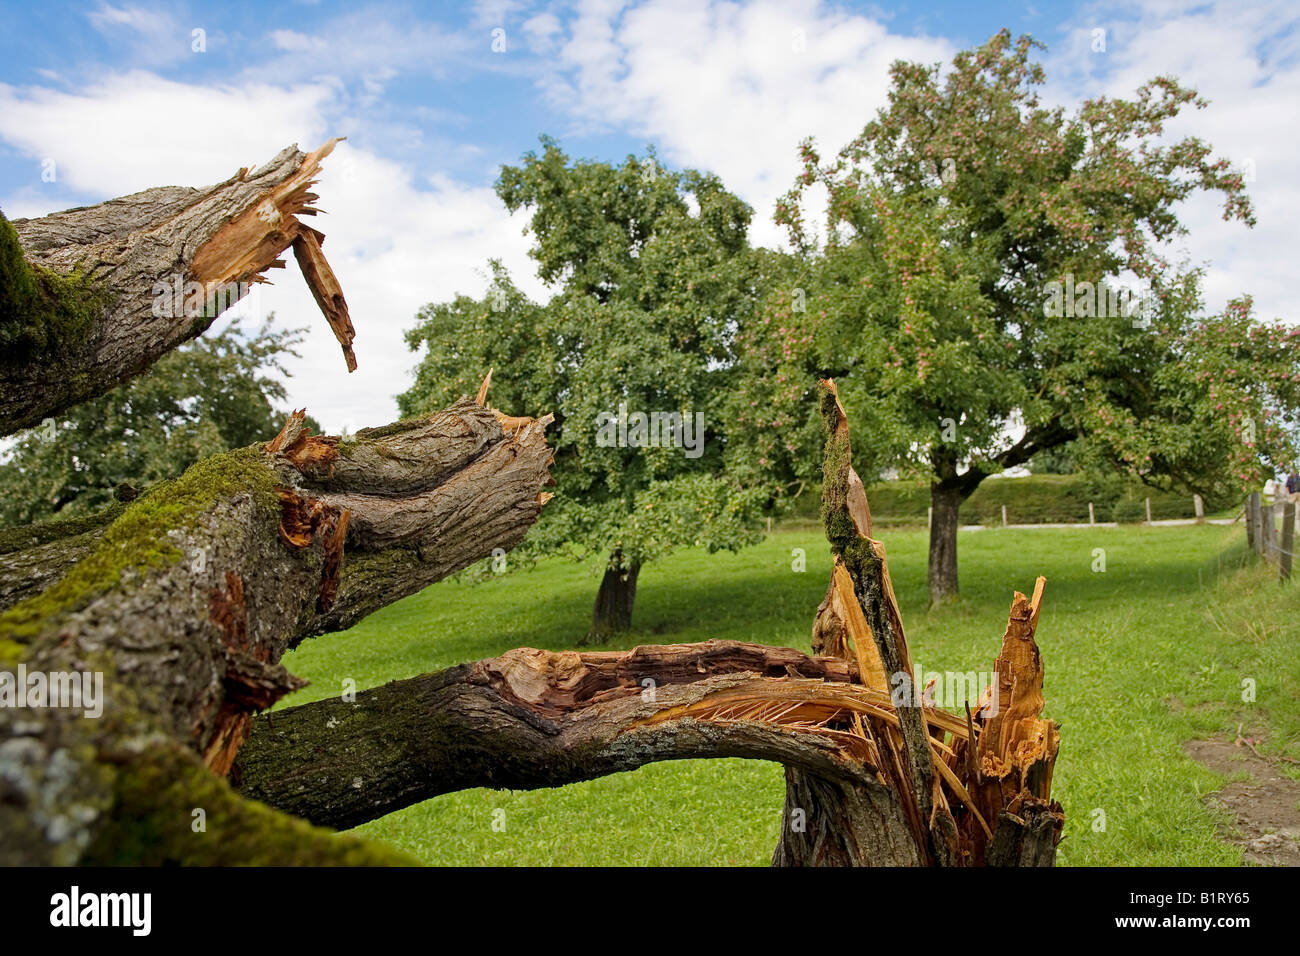 In Storm-danneggiato susino (Prunus domestica), distretto di Sense, Cantone di Friburgo, Svizzera, Europa Foto Stock